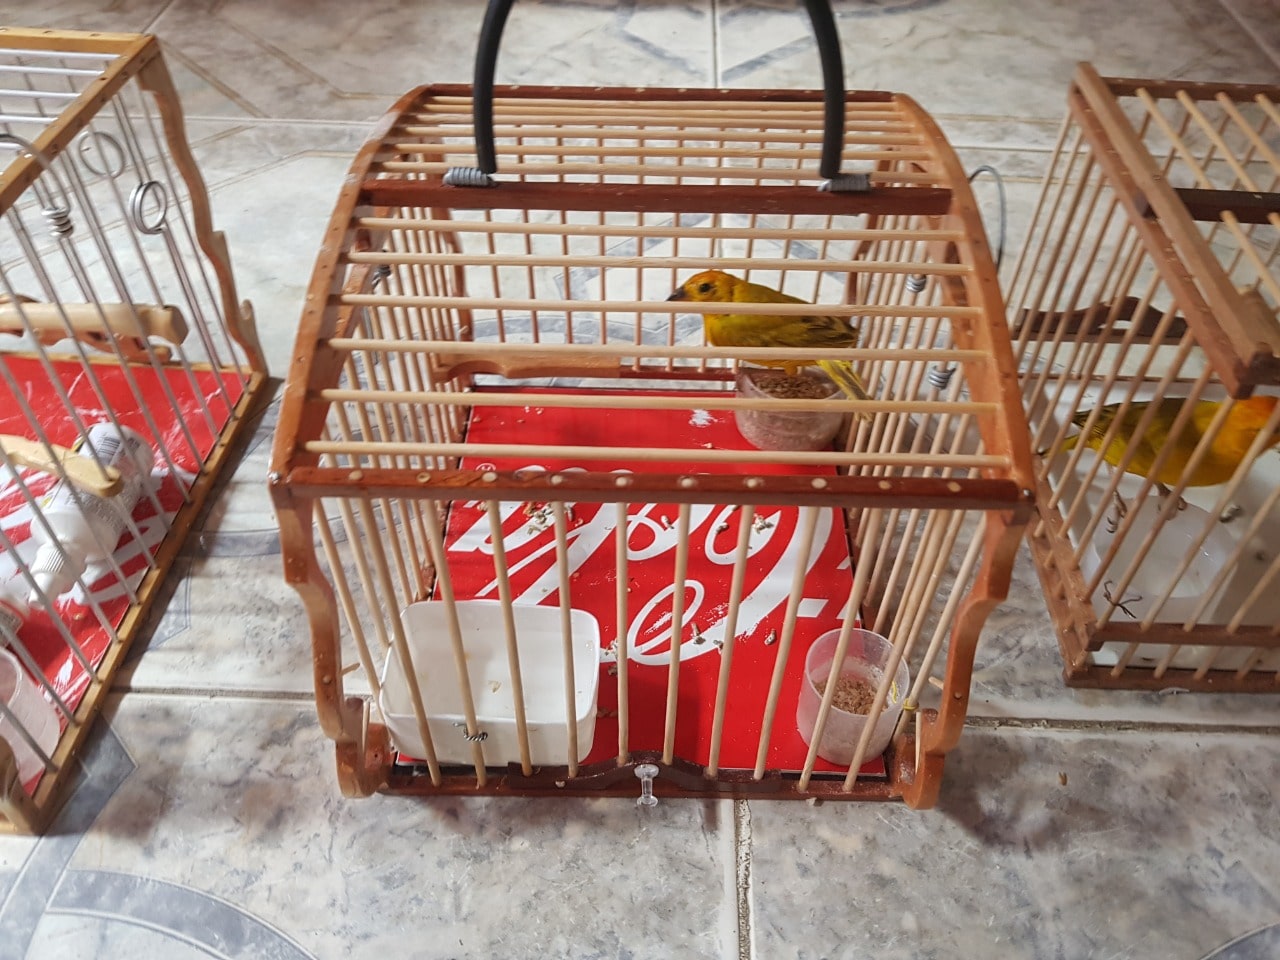 Denuncias ciudadanas permiten incautar aves silvestres y productos elaborados con fauna